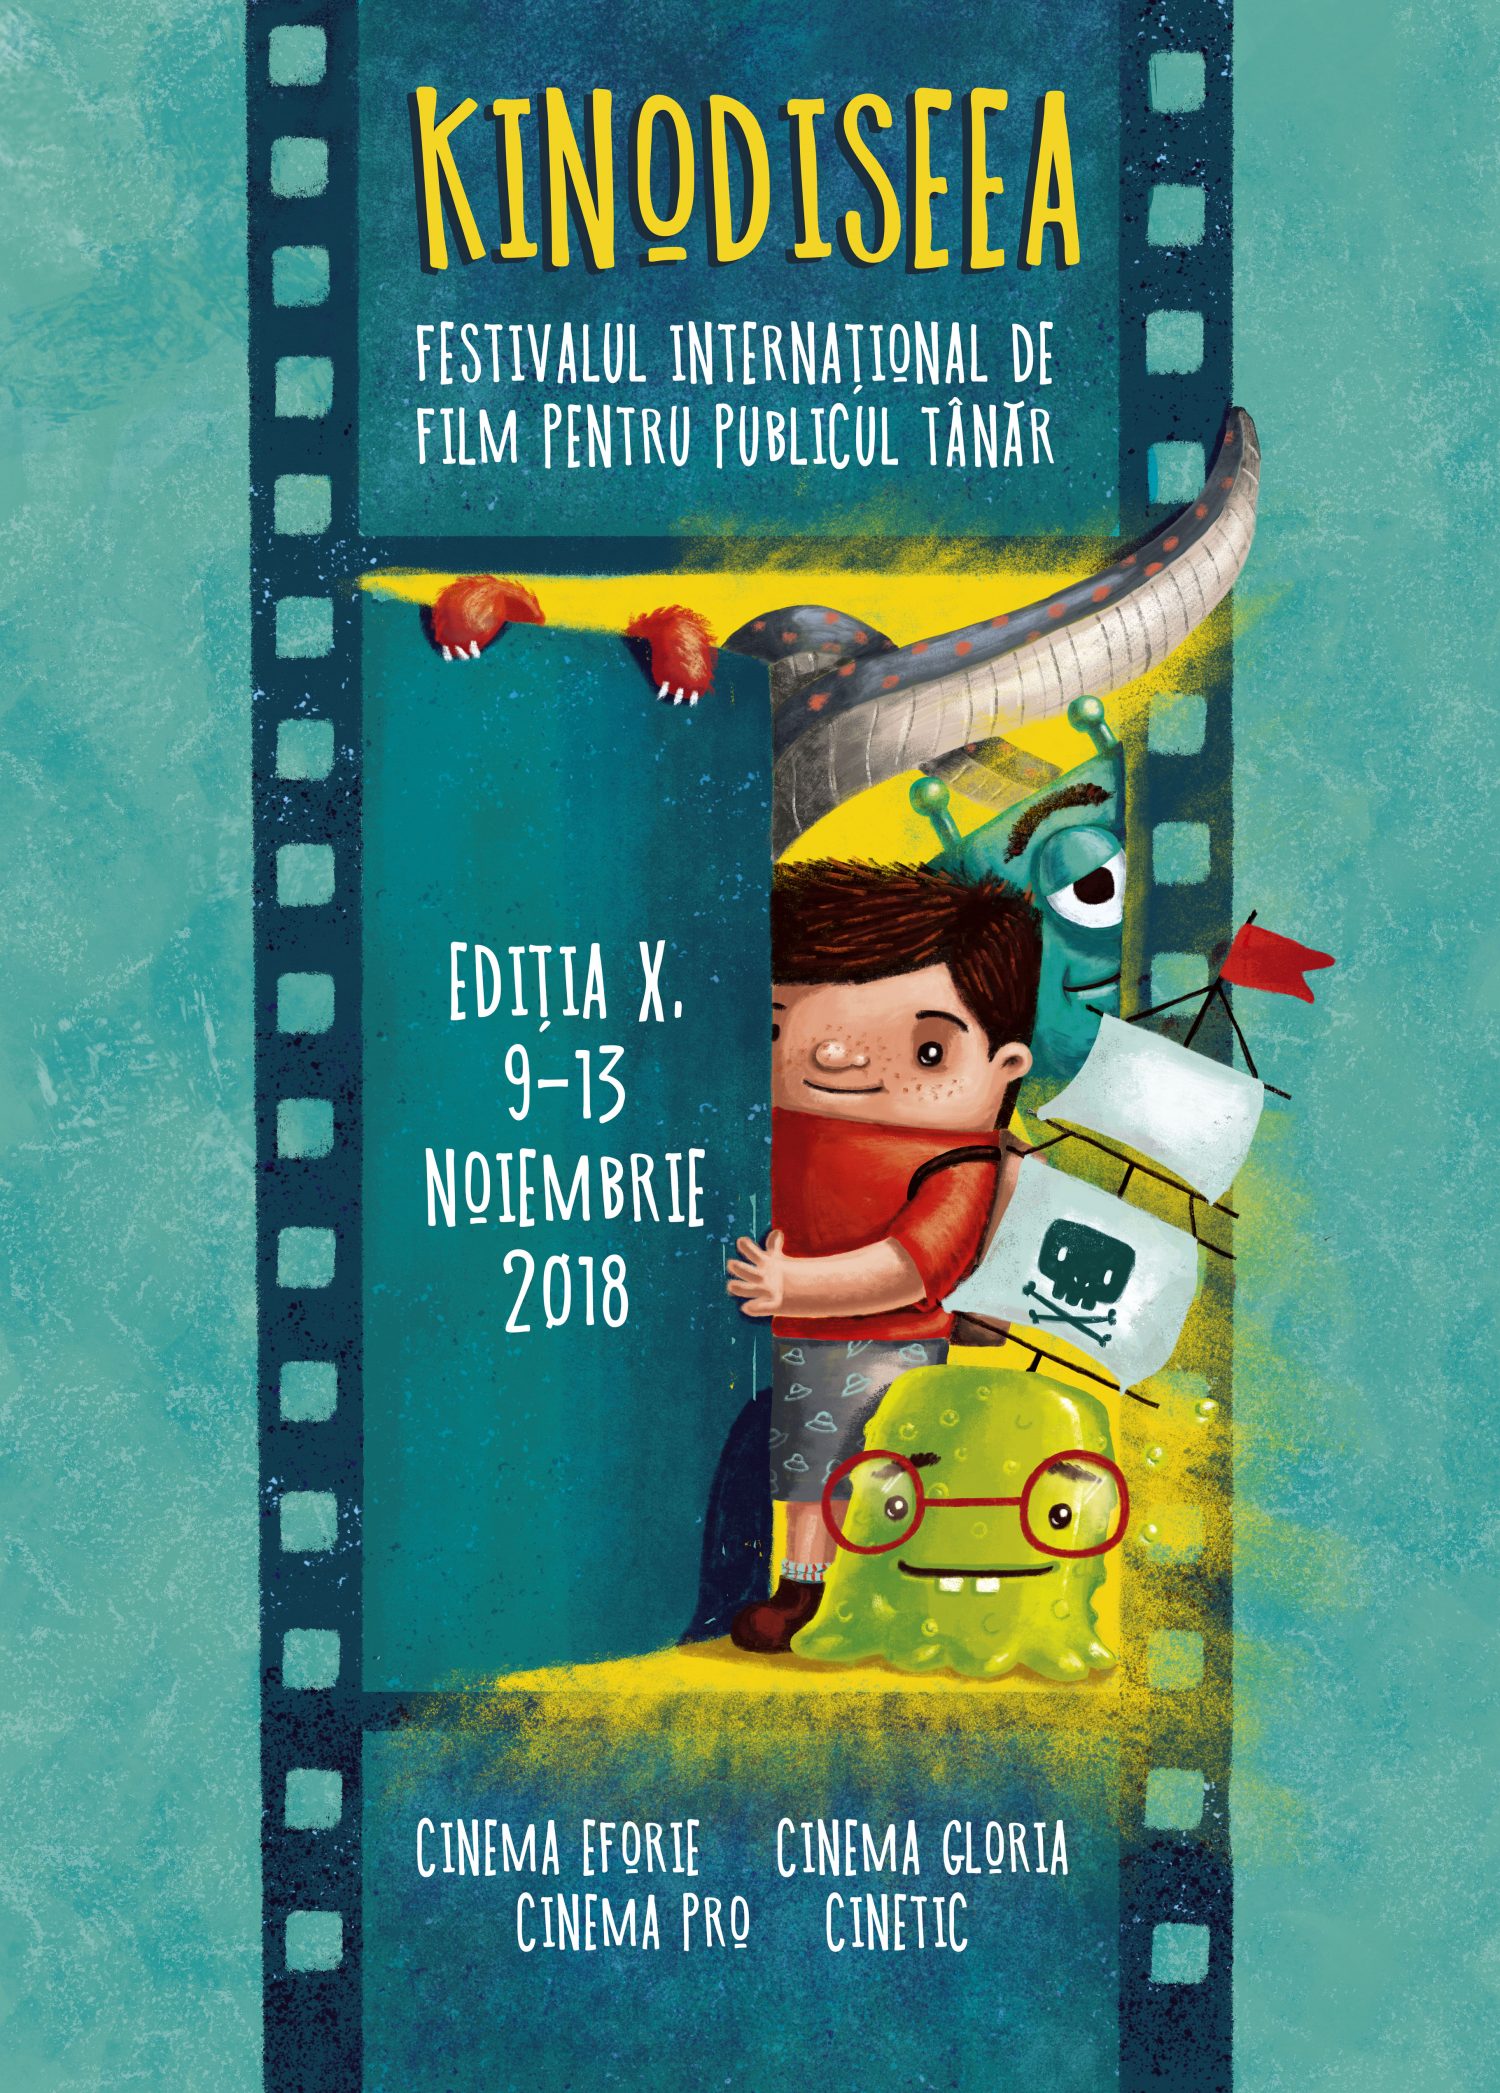 Kinodiseea Film Festival - Poster illustration